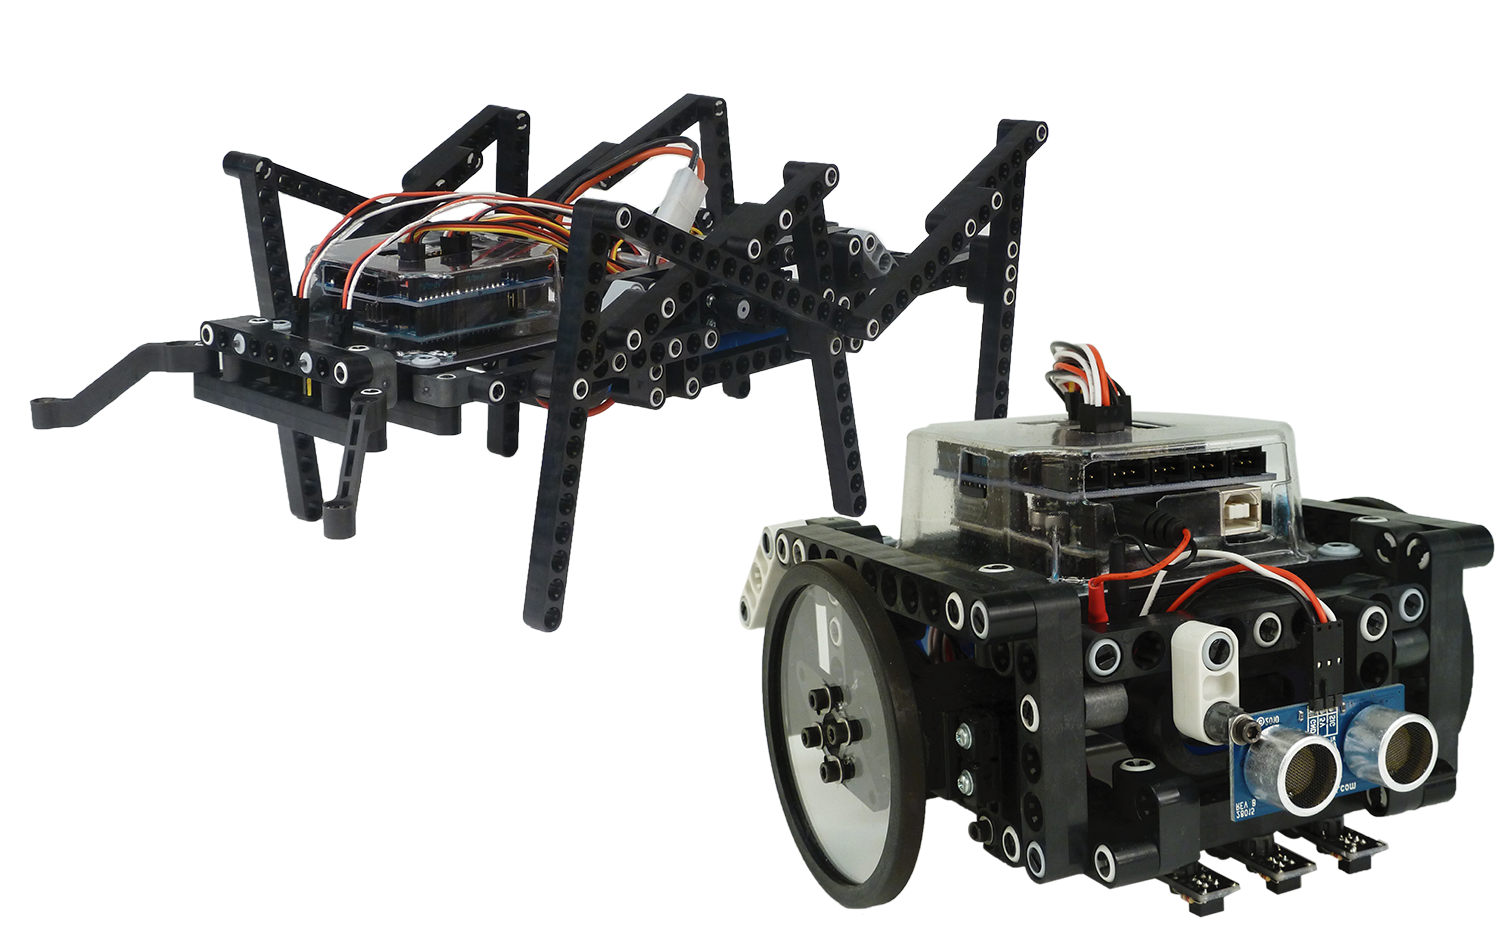 2-in-1 Arduino Robot Kit Image